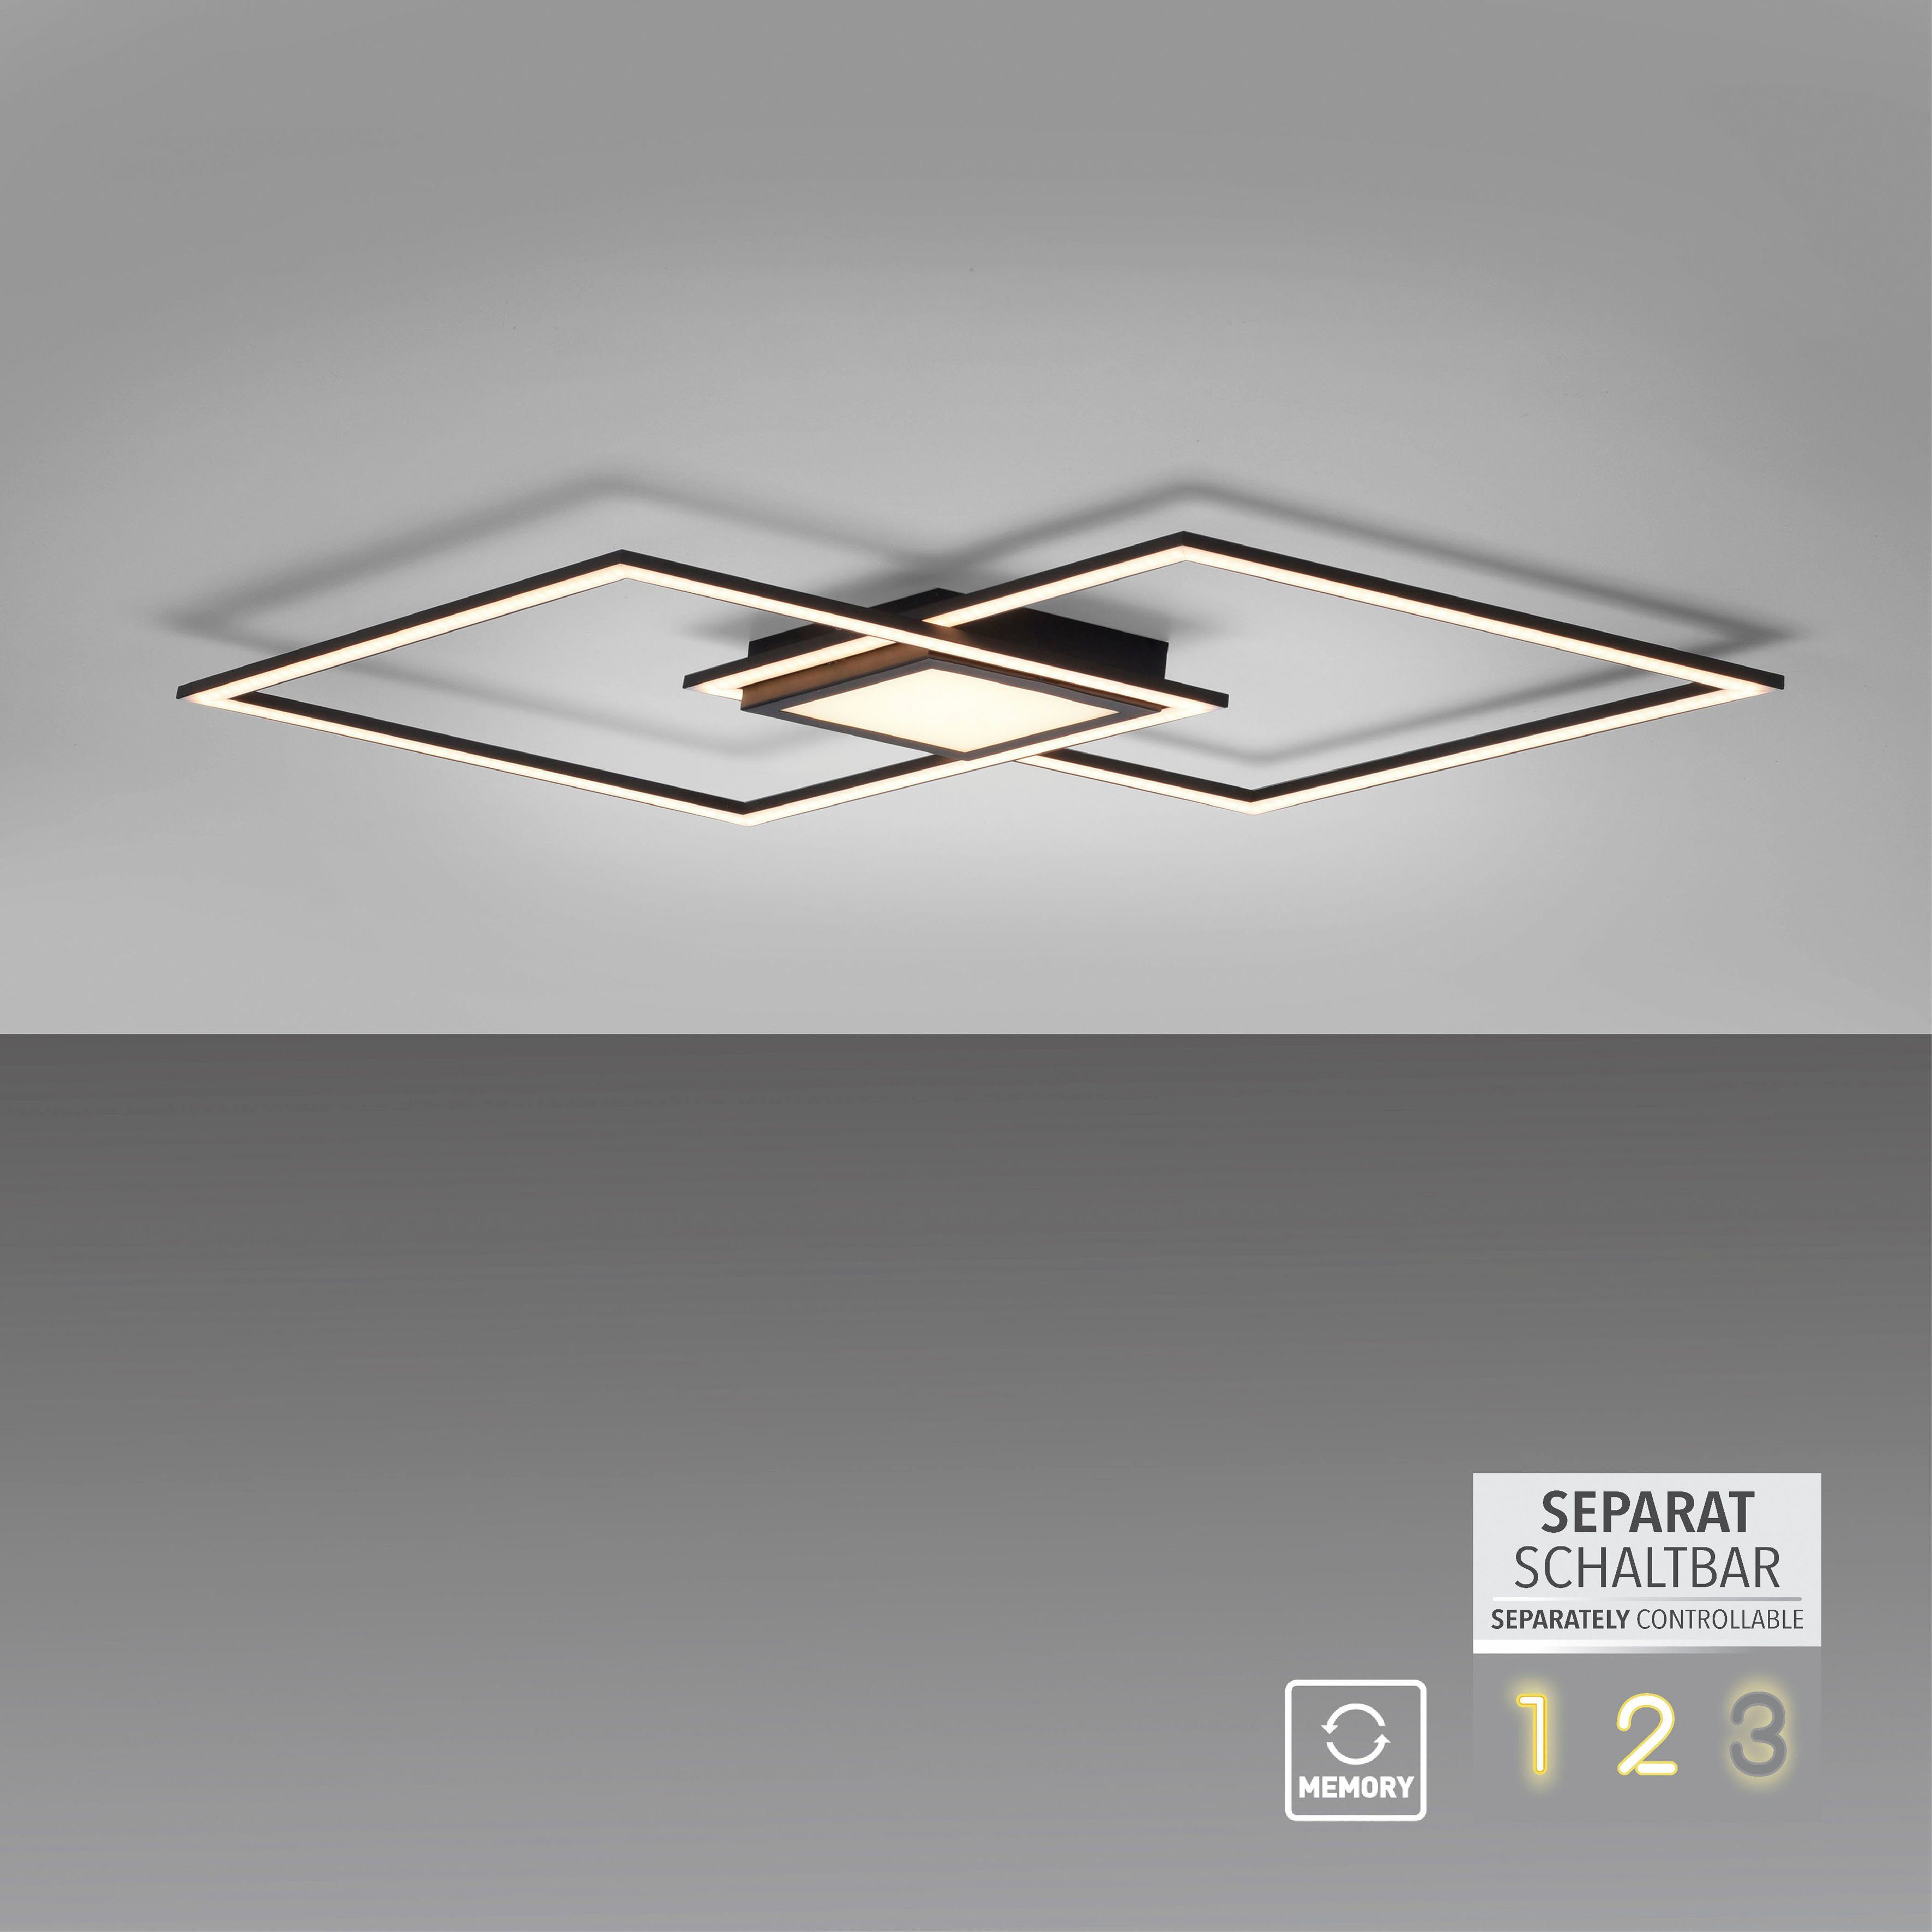 LED, Deckenleuchte Leuchten Direkt (Schalter) fest separat LED steuerbar steuerbar separat integriert, (Schalter), ASMIN, Warmweiß,